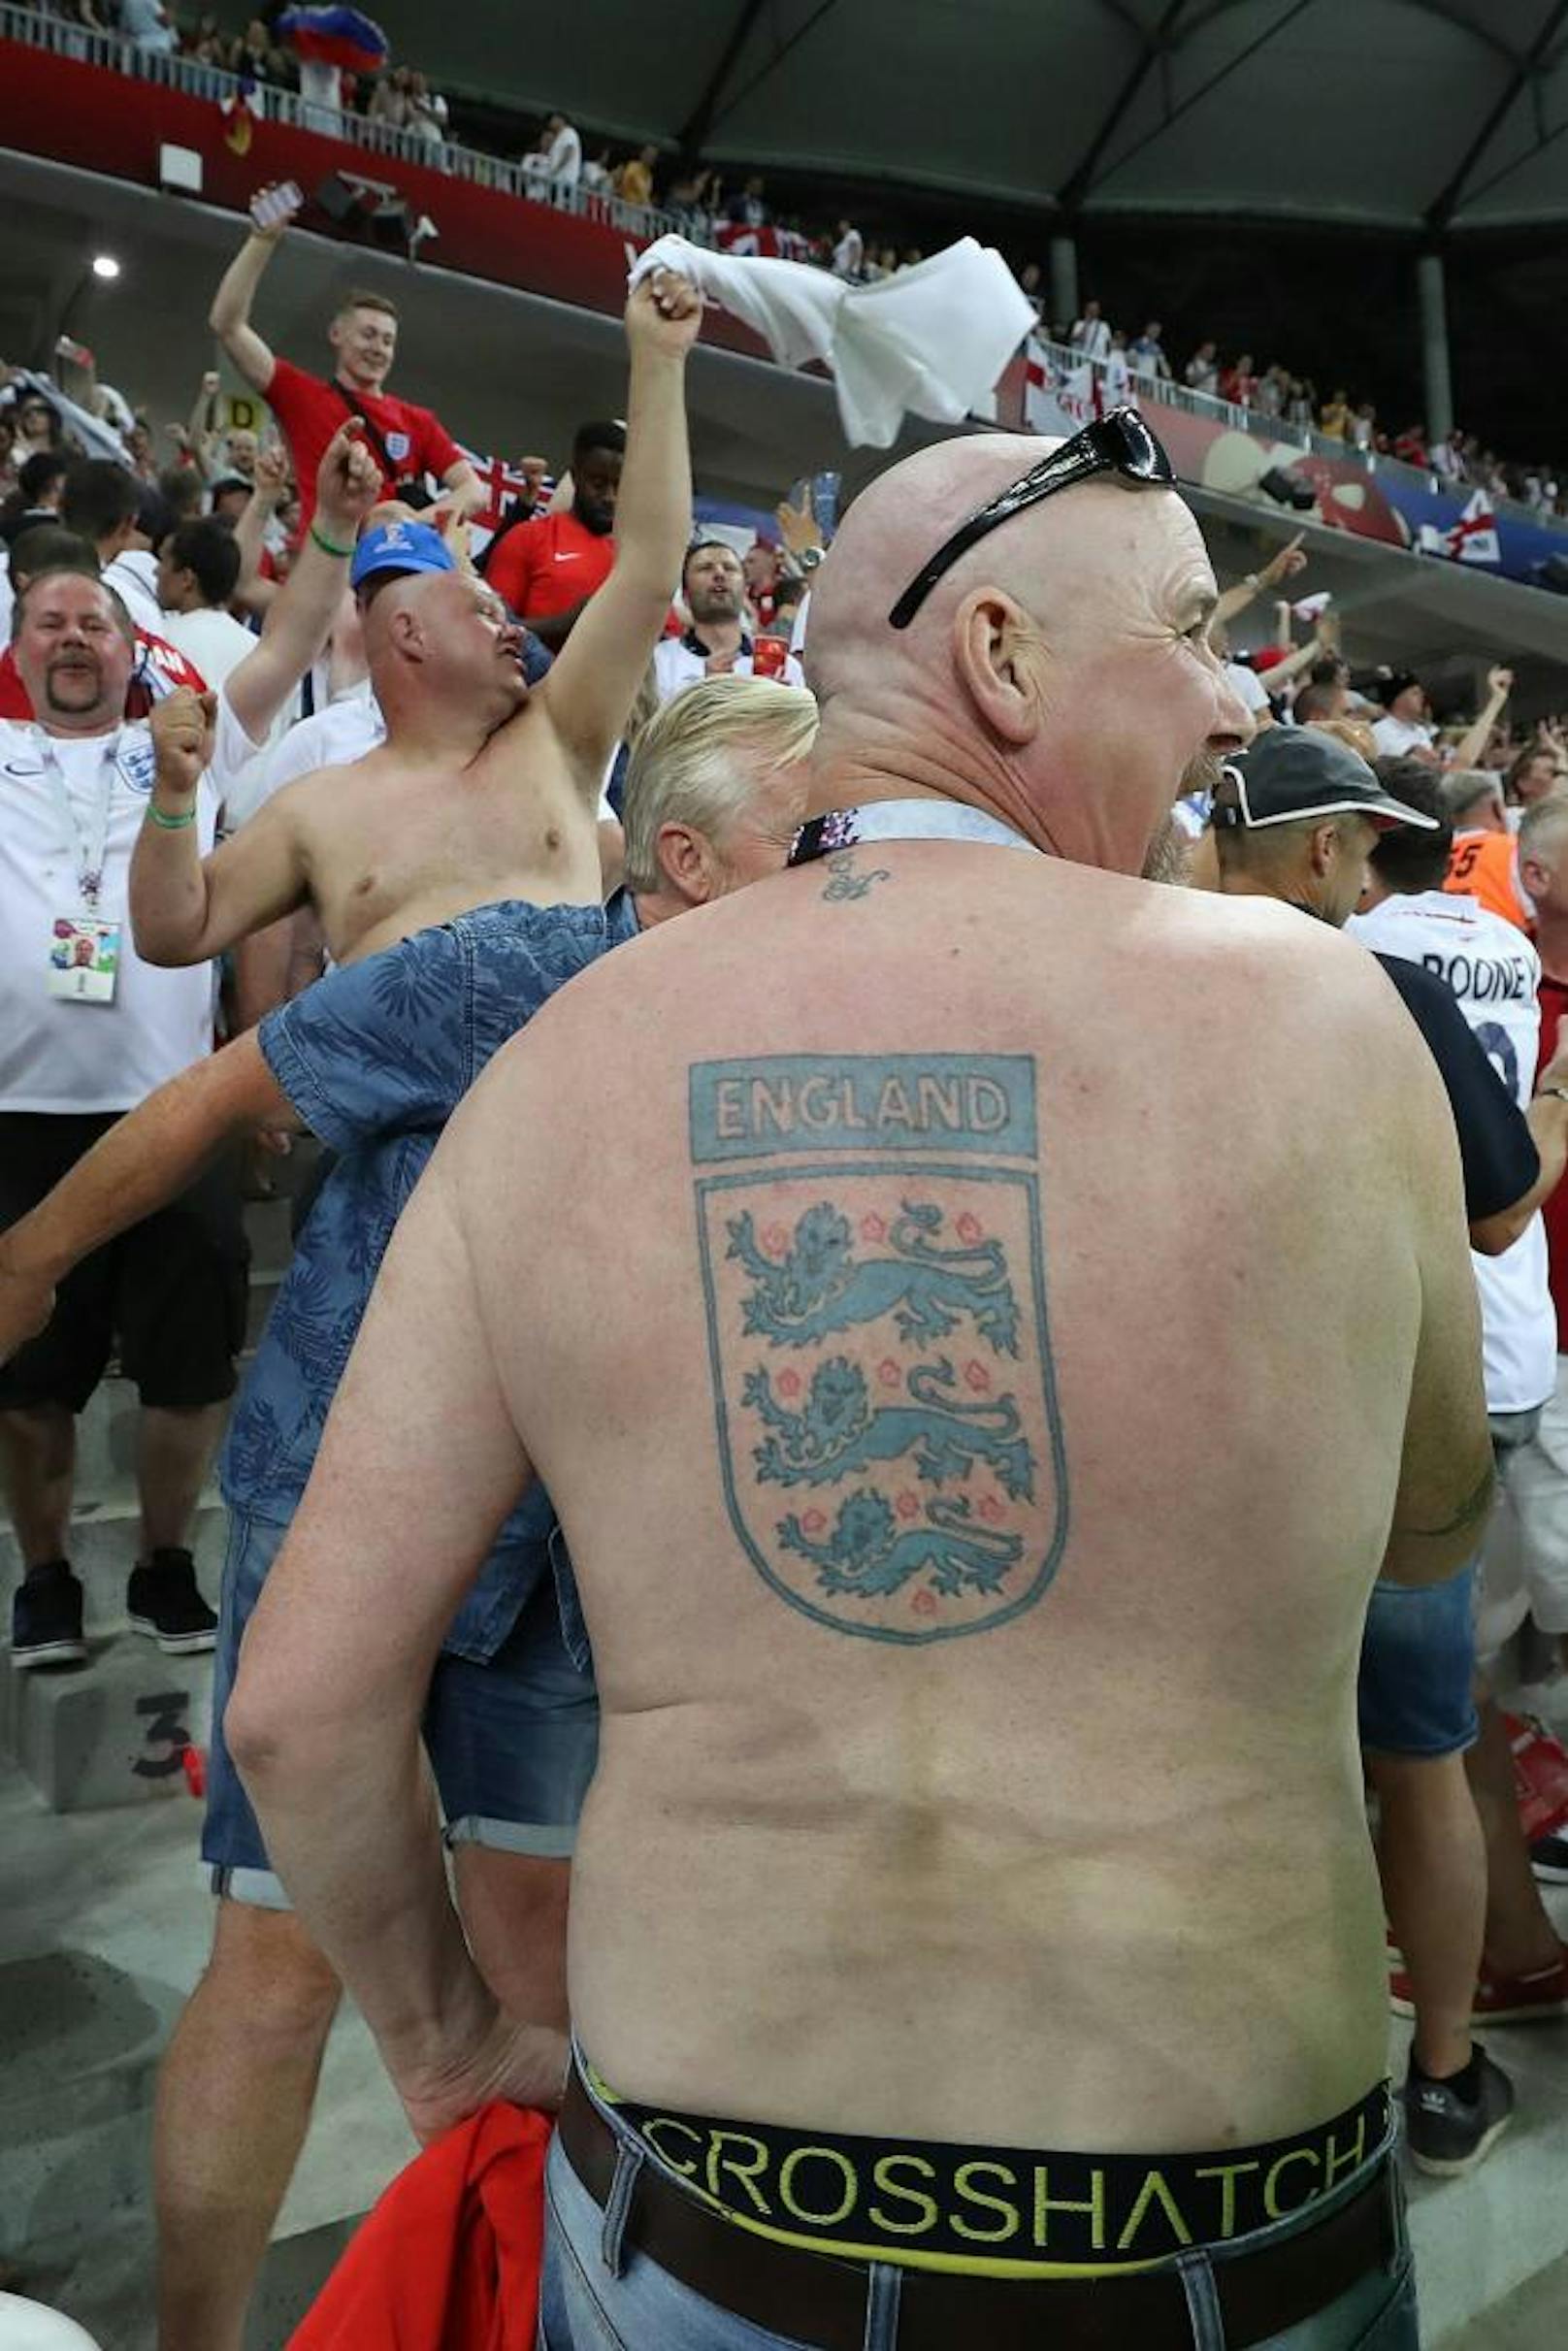 Fußball-Fest in Russland! Tausende Fans fieberten 2018 bei der WM in den Stadien mit - meist bestens gelaunt. "Heute" fand die schönsten und kuriosesten Schlachtenbummler.